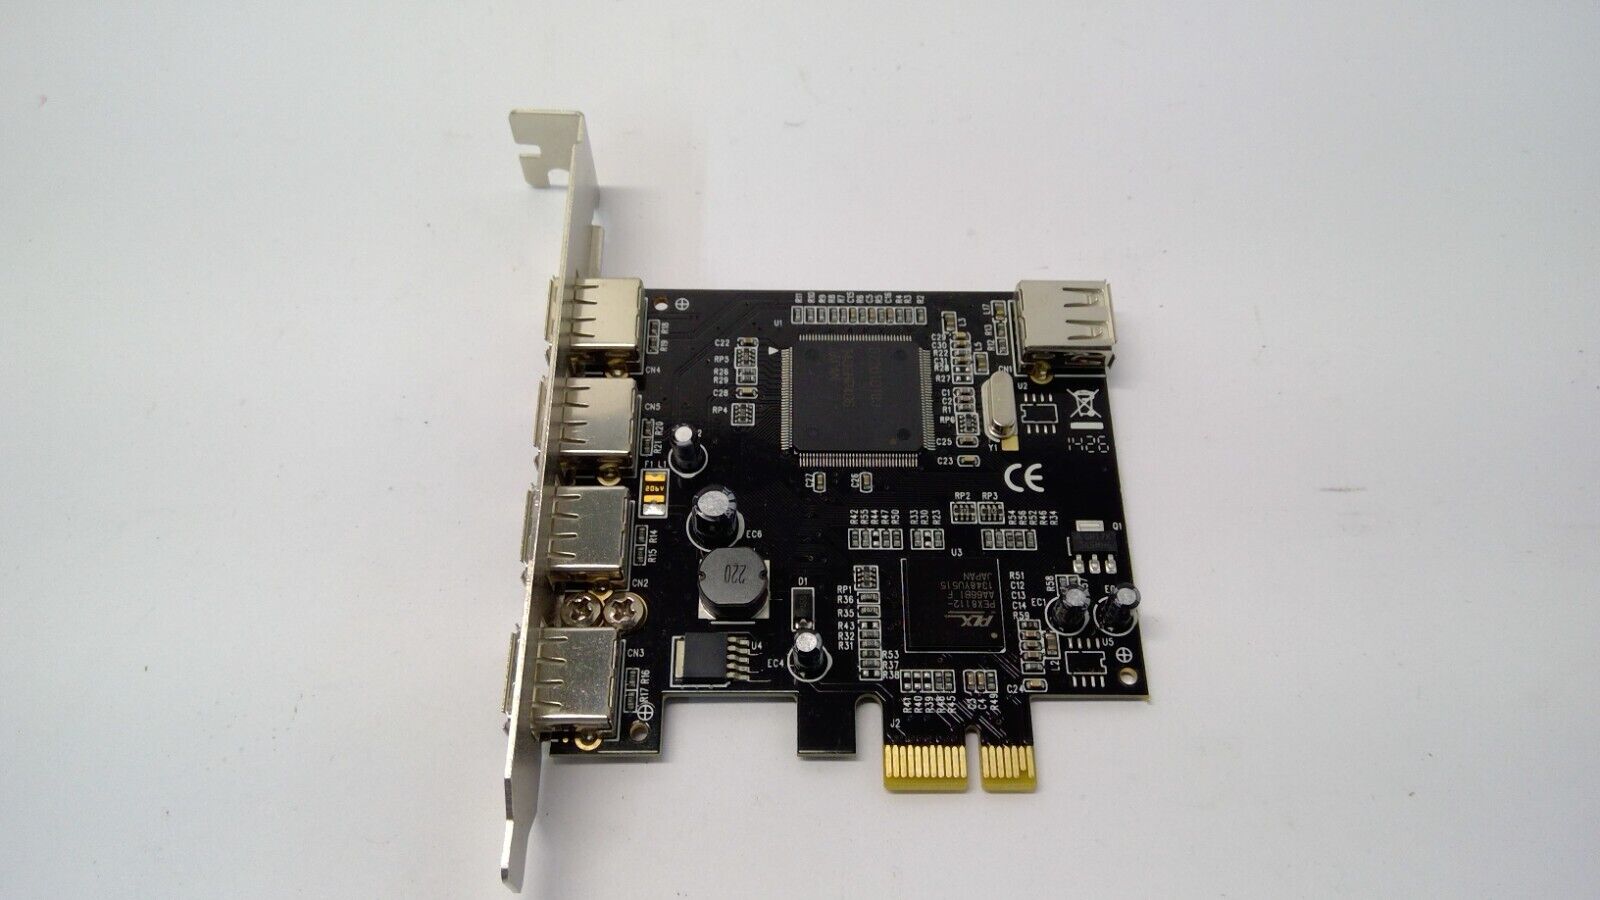 PEX400USB2 StarTech 4 Port USB 2.0 Card Controller Adapter Card